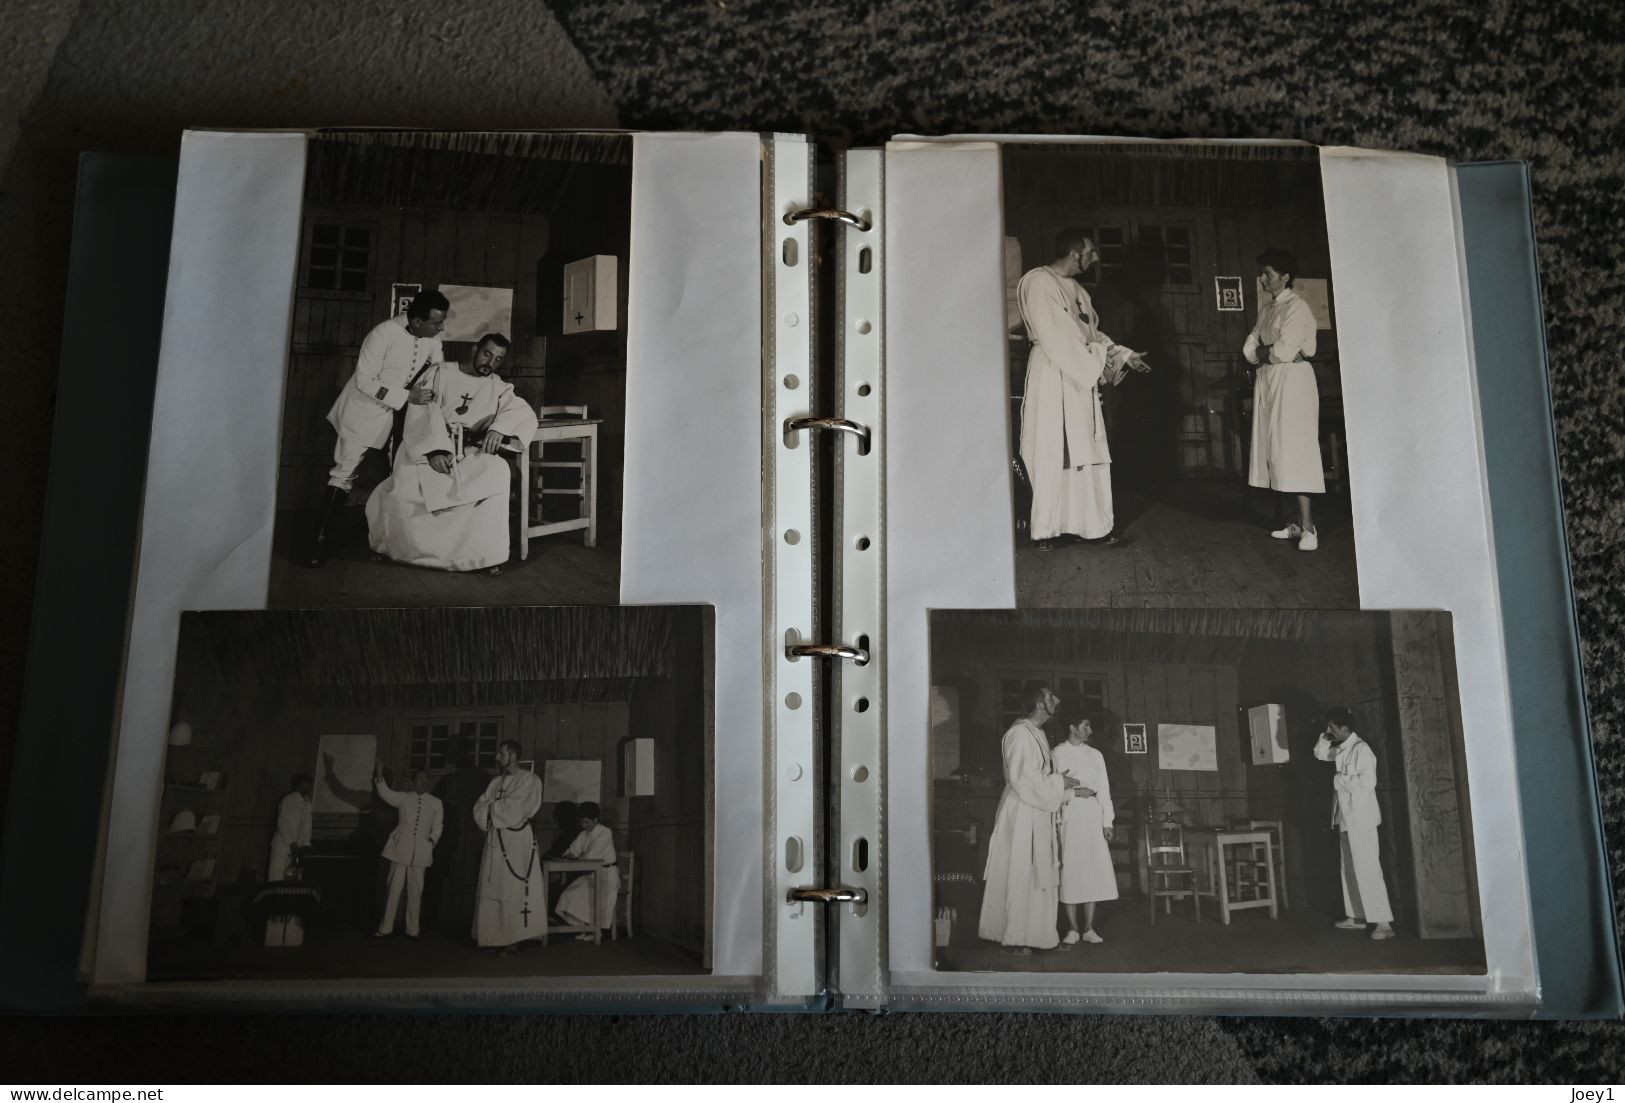 2 Albums magnifique,histoire d une troupe de Théatre de 1950 à 1968 photos 13/18